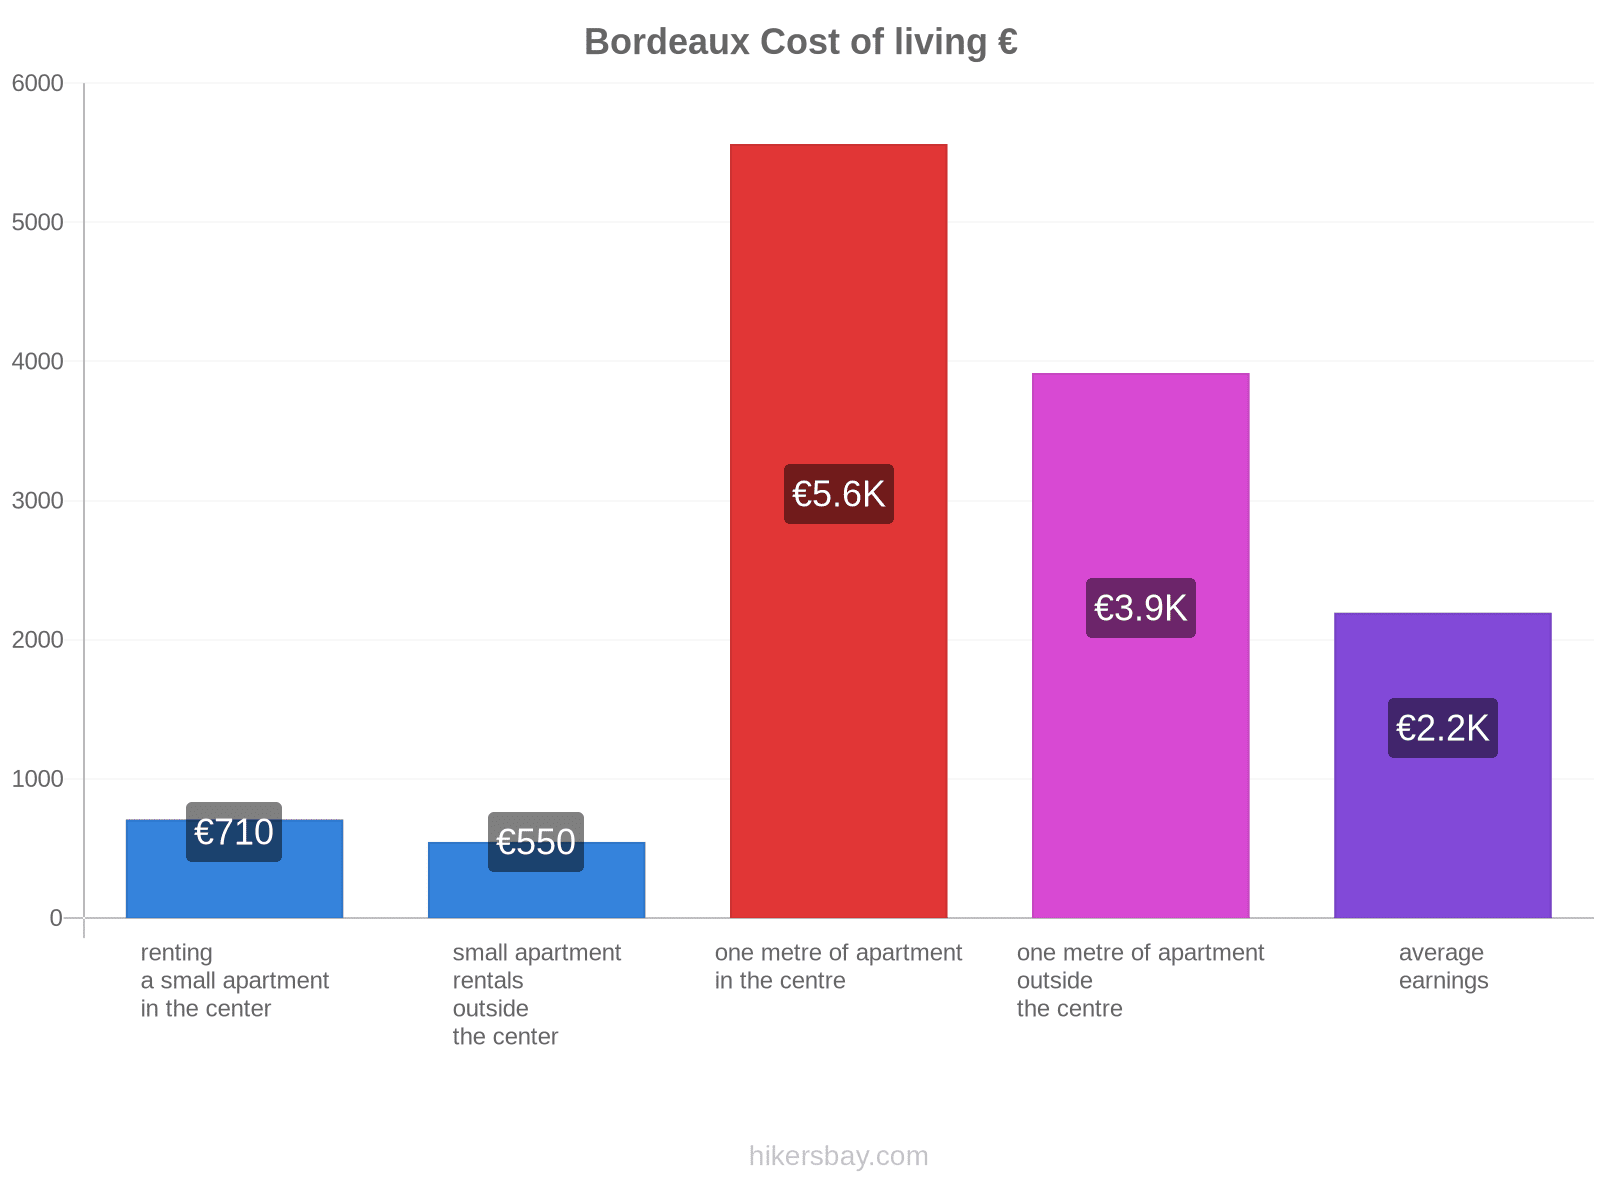 Bordeaux cost of living hikersbay.com